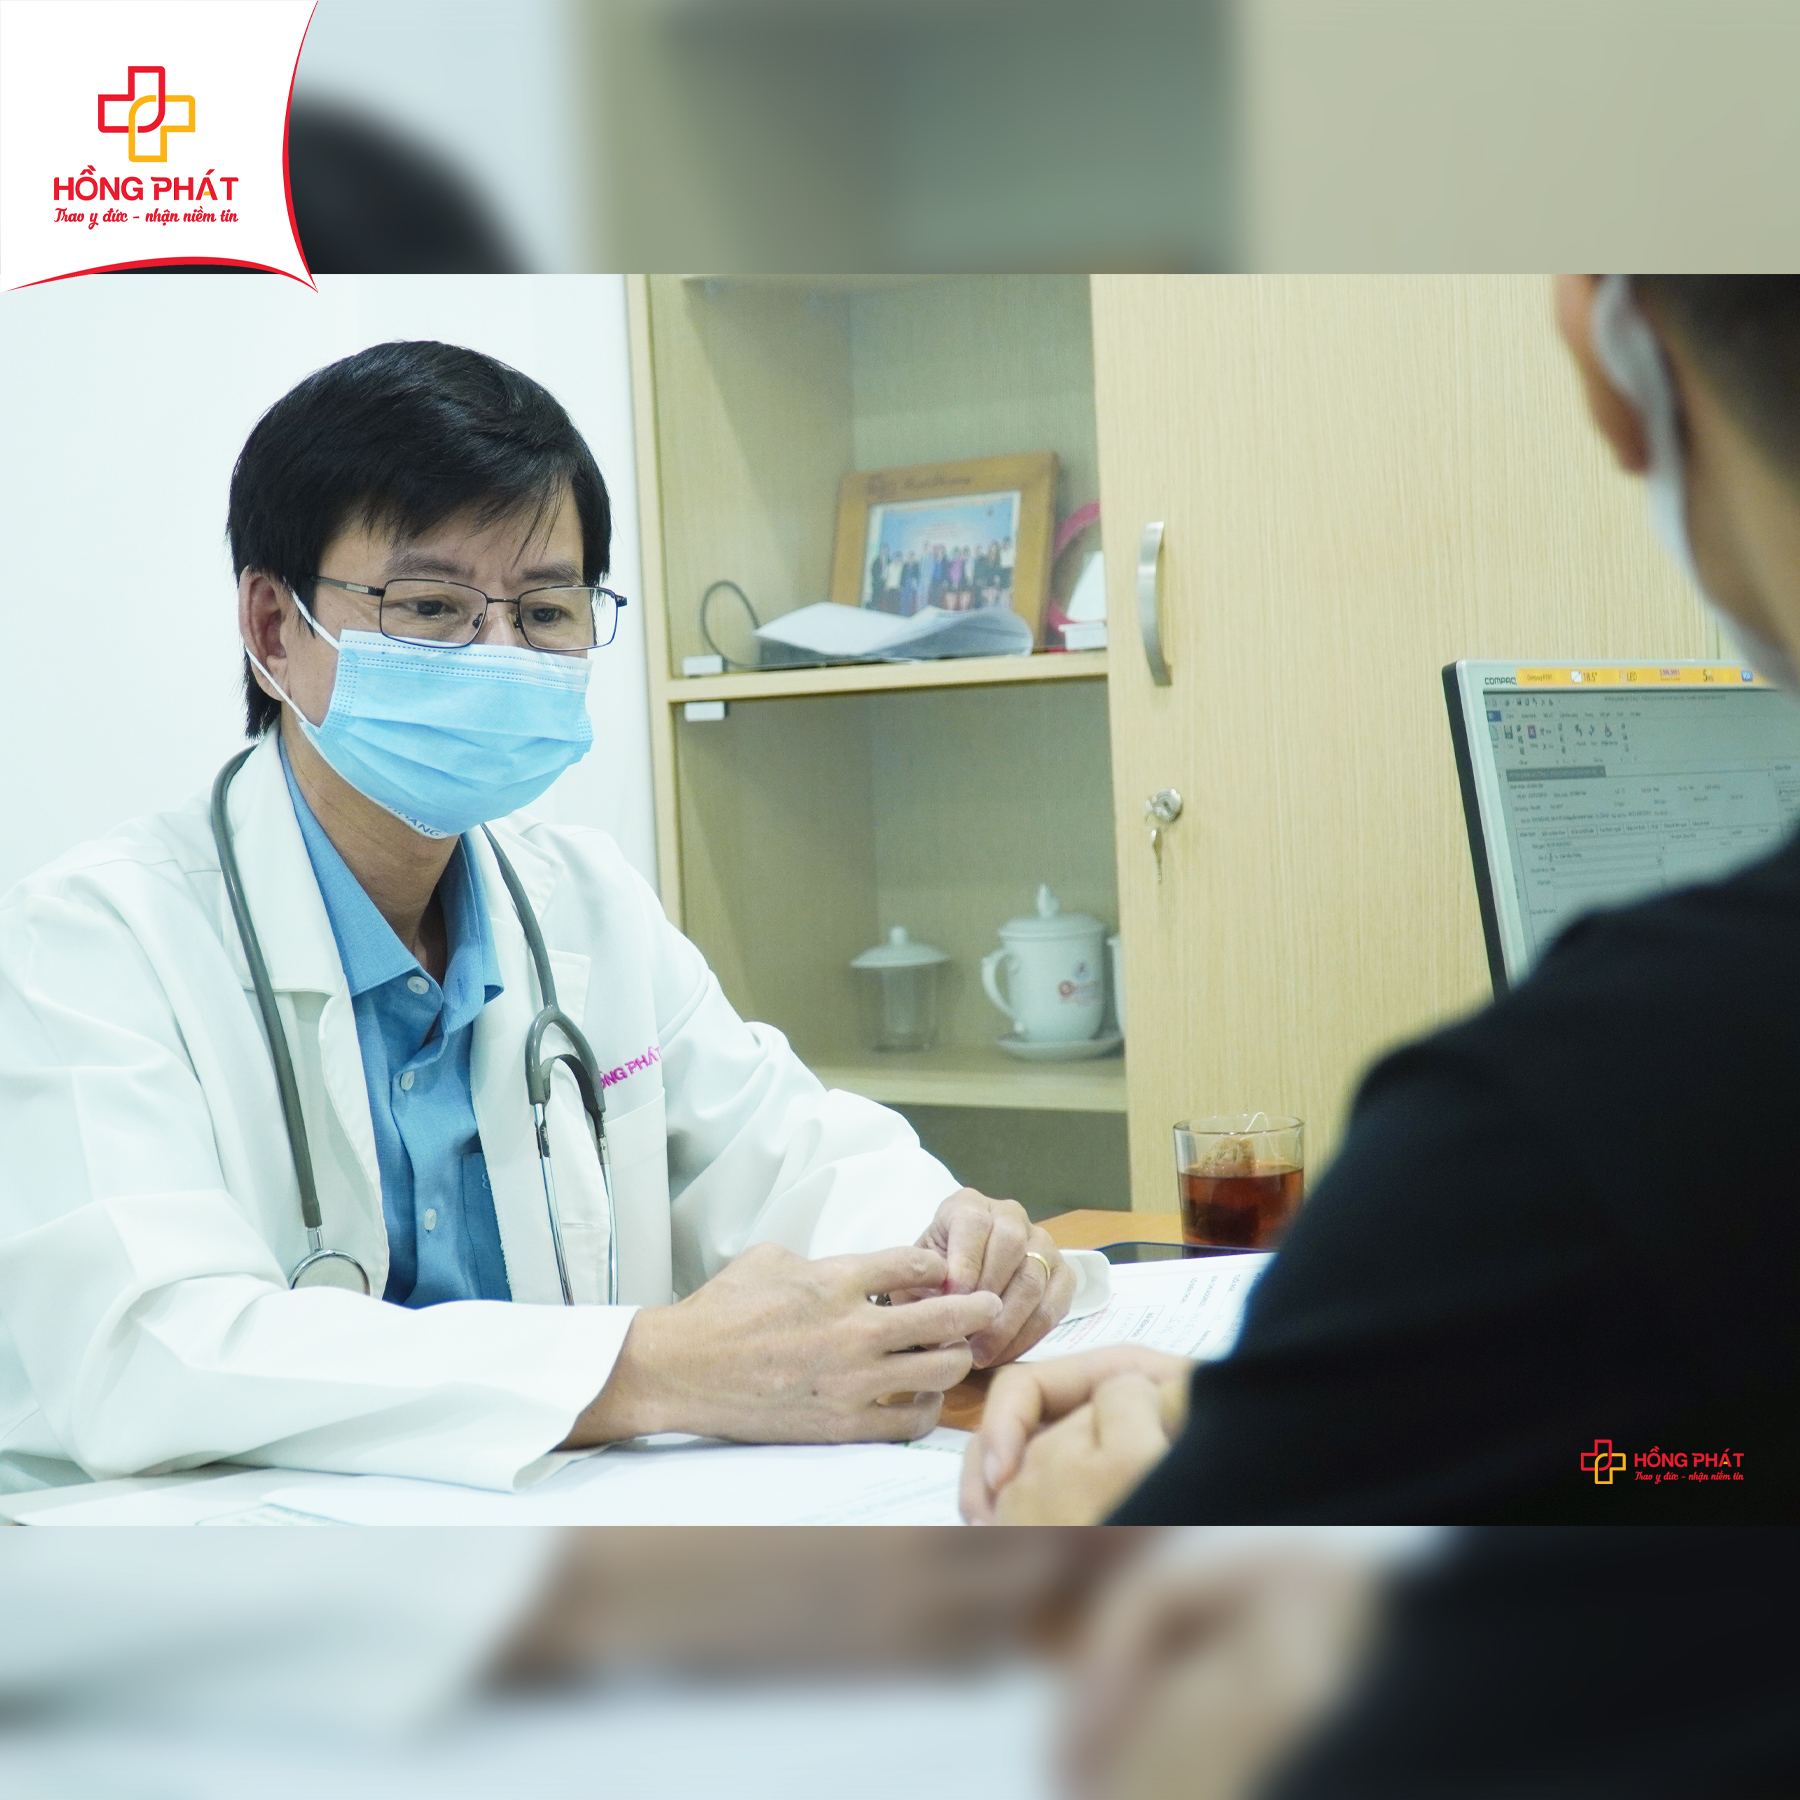 Tiến sĩ, Bác sĩ Trần Hữu Thông trao đổi với bệnh nhân